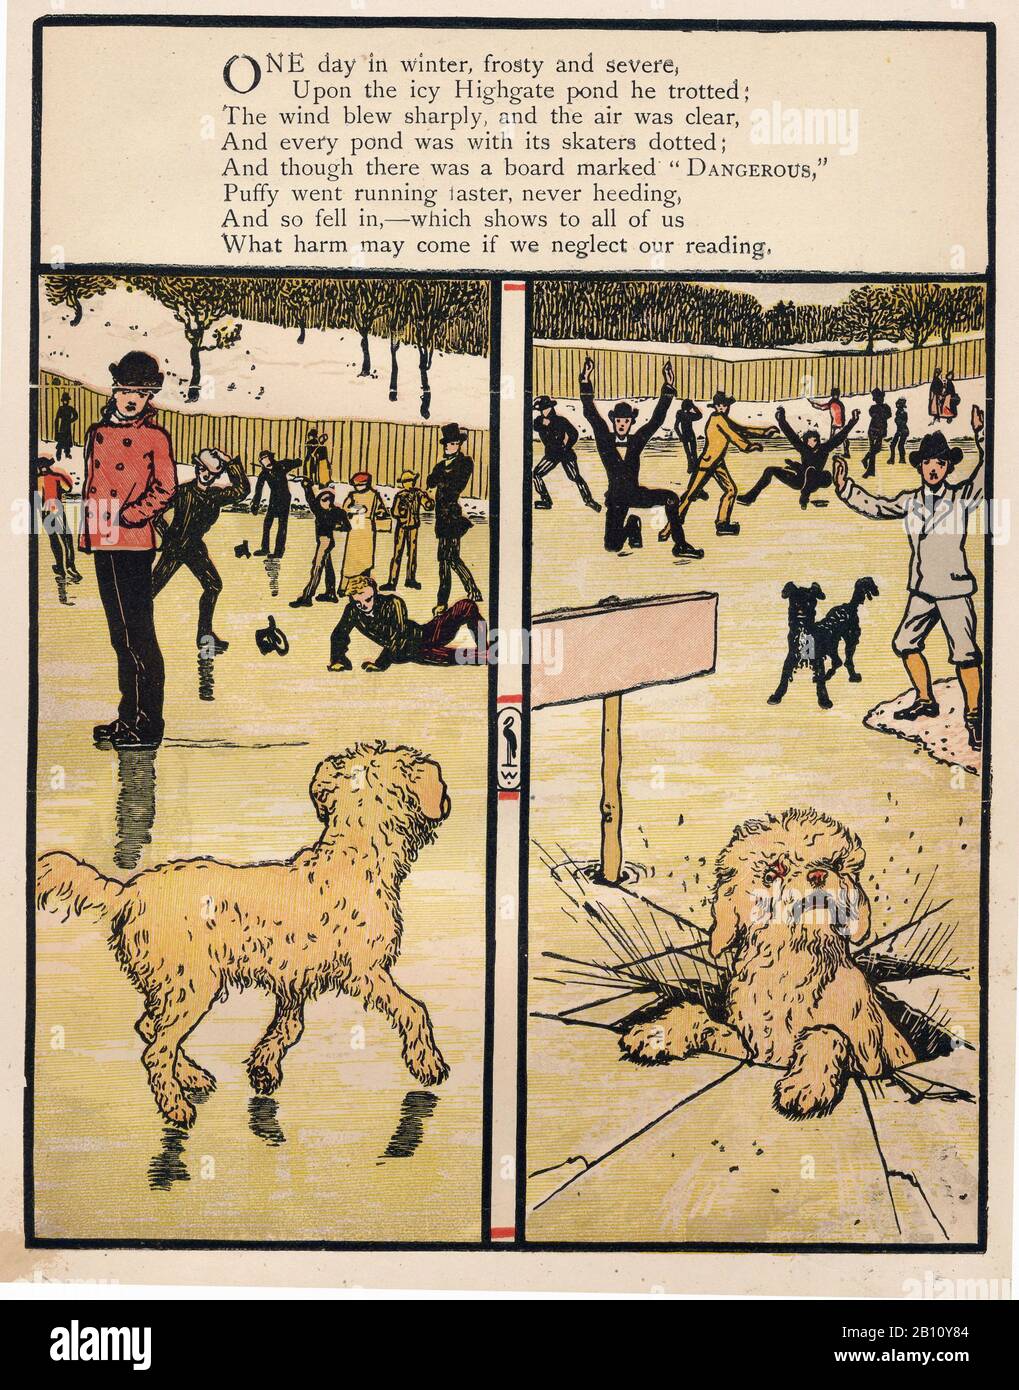 Le avventure di Puffy, libro dell'immagine - 1874 - Illustrazione di Walter cane (1845 - 1915) Foto Stock